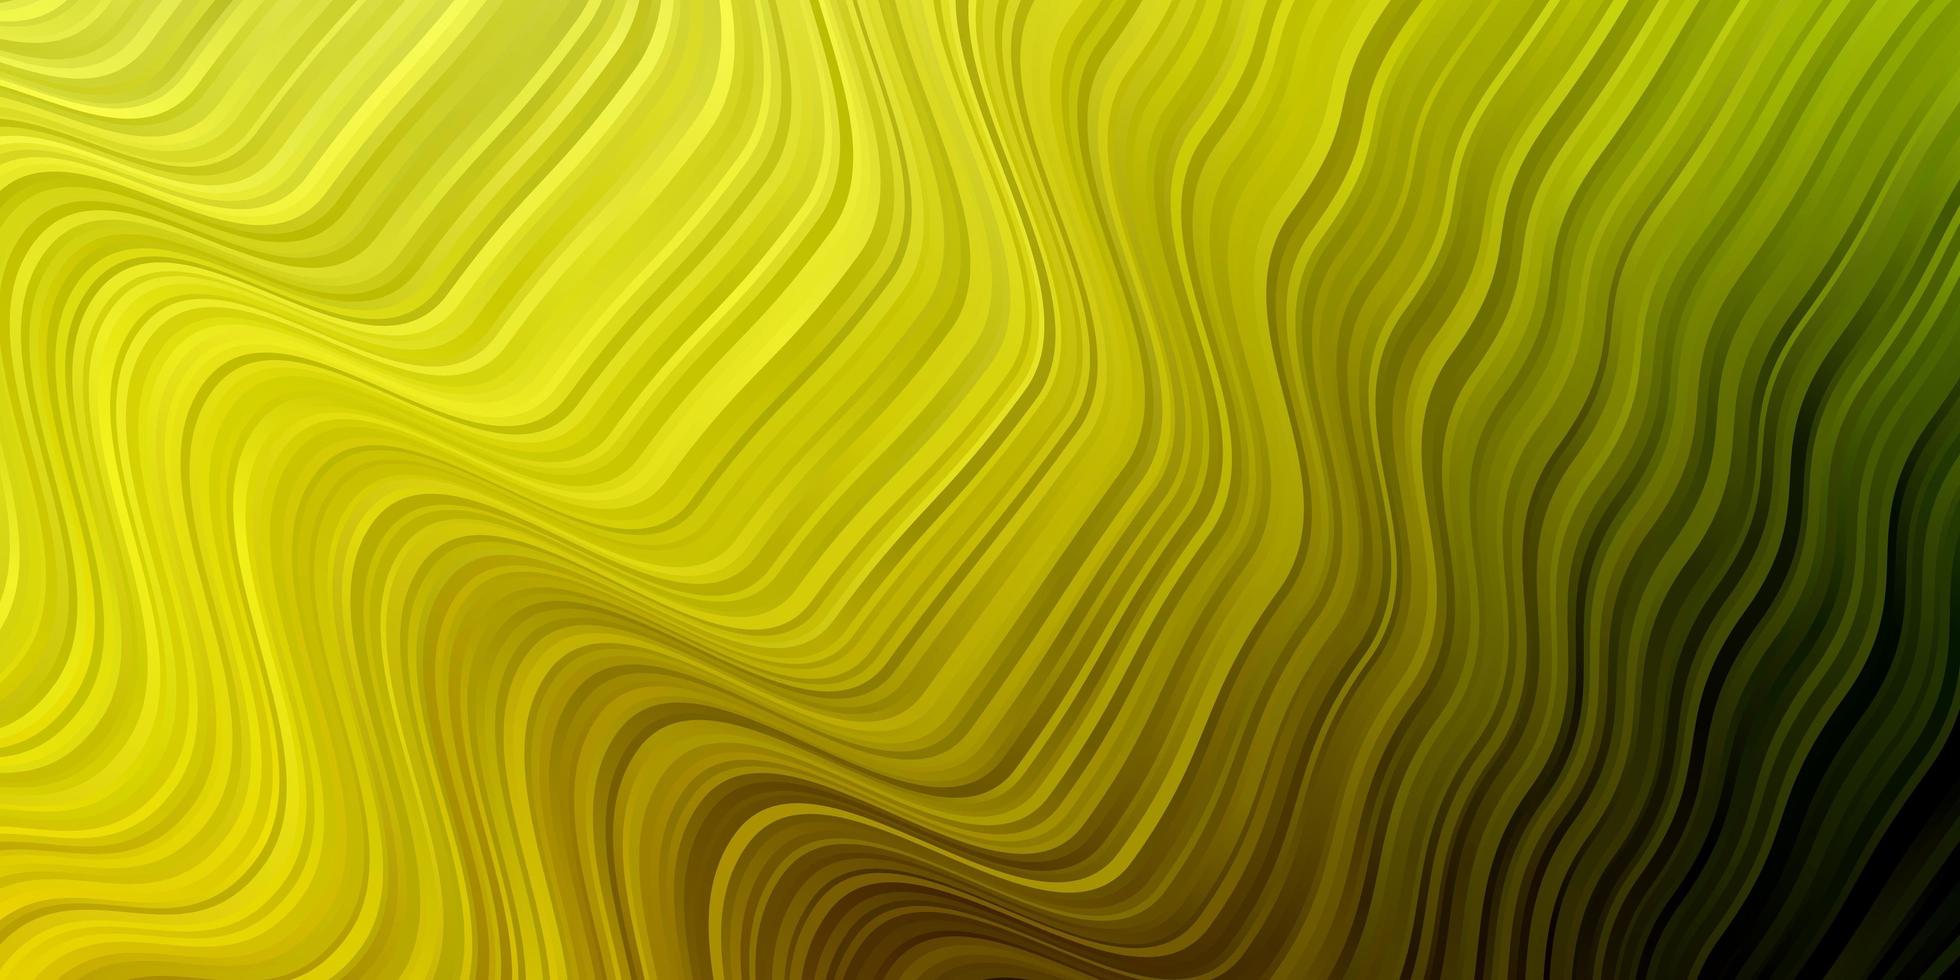 textura de vetor verde e amarelo claro com curvas.